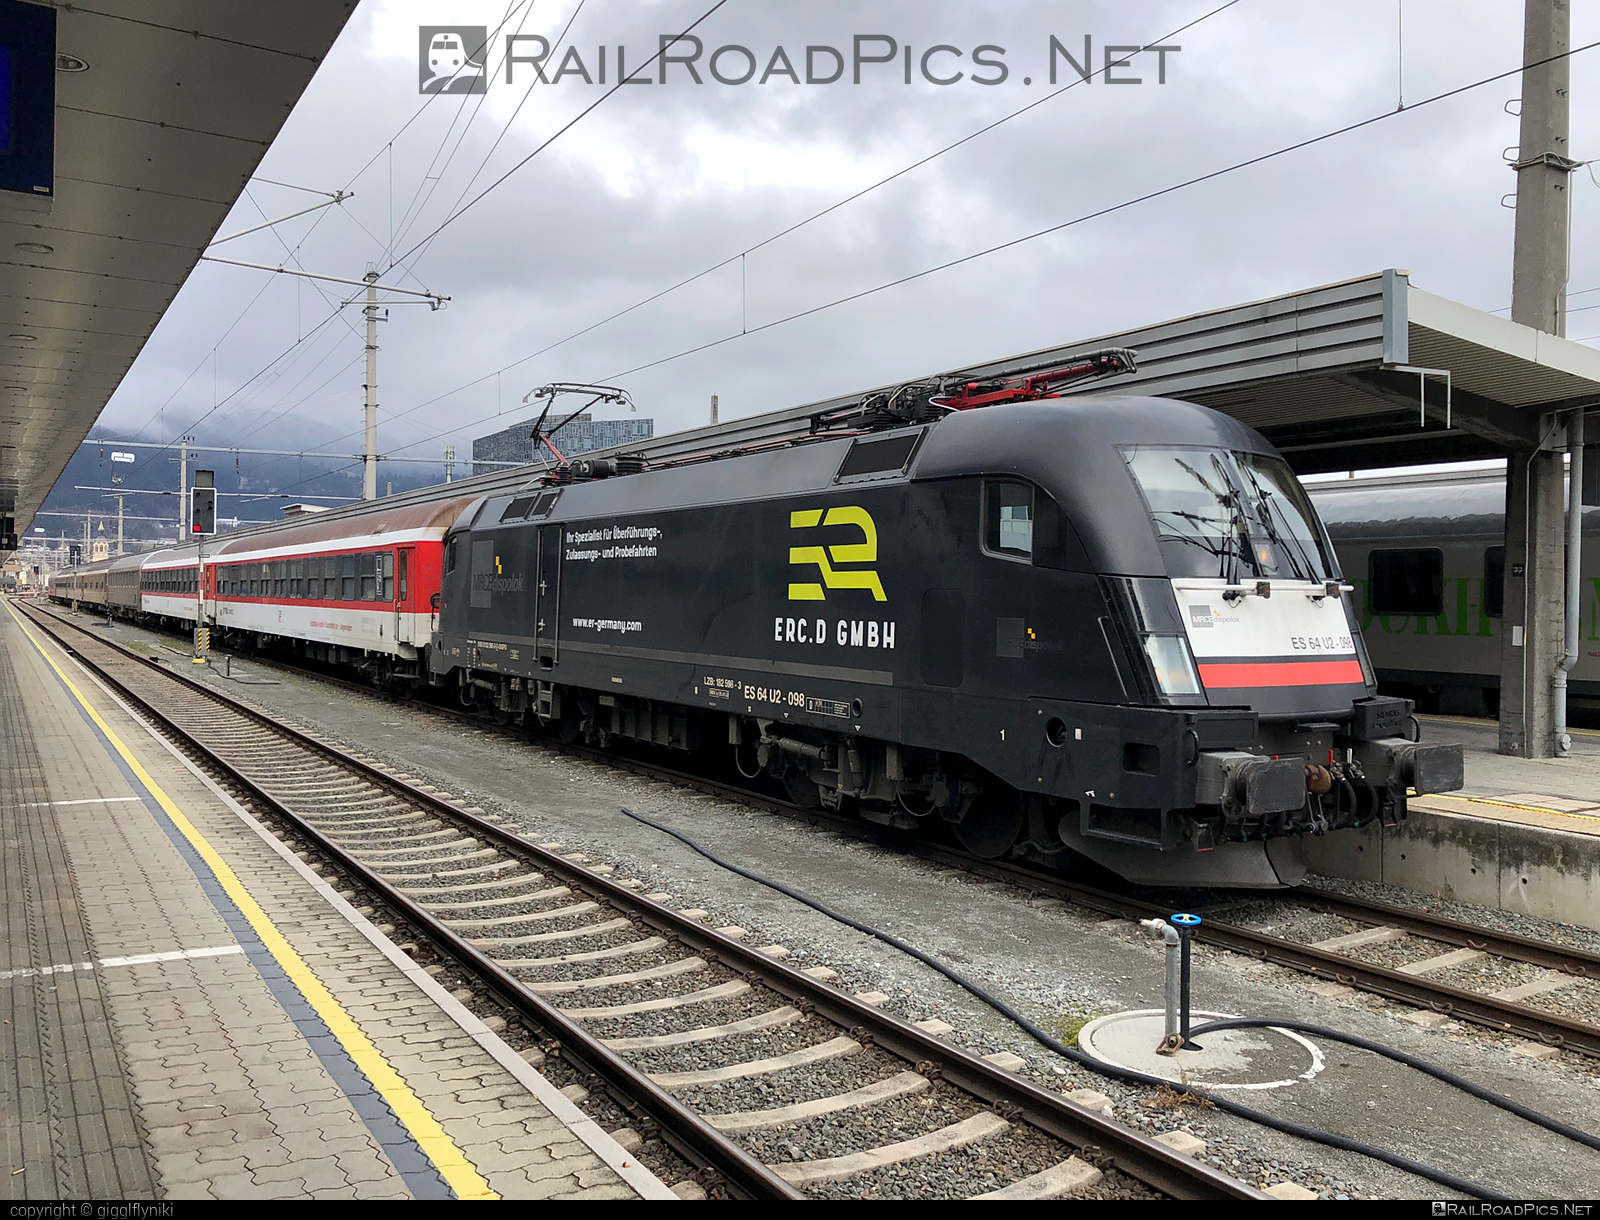 Siemens ES 64 U2 - 182 598 operated by European Railway Company Deutschland GmbH #dispolok #erc #es64 #es64u2 #eurosprinter #mitsuirailcapitaleurope #mitsuirailcapitaleuropegmbh #mrce #siemens #siemensEs64 #siemensEs64u2 #siemenstaurus #taurus #tauruslocomotive